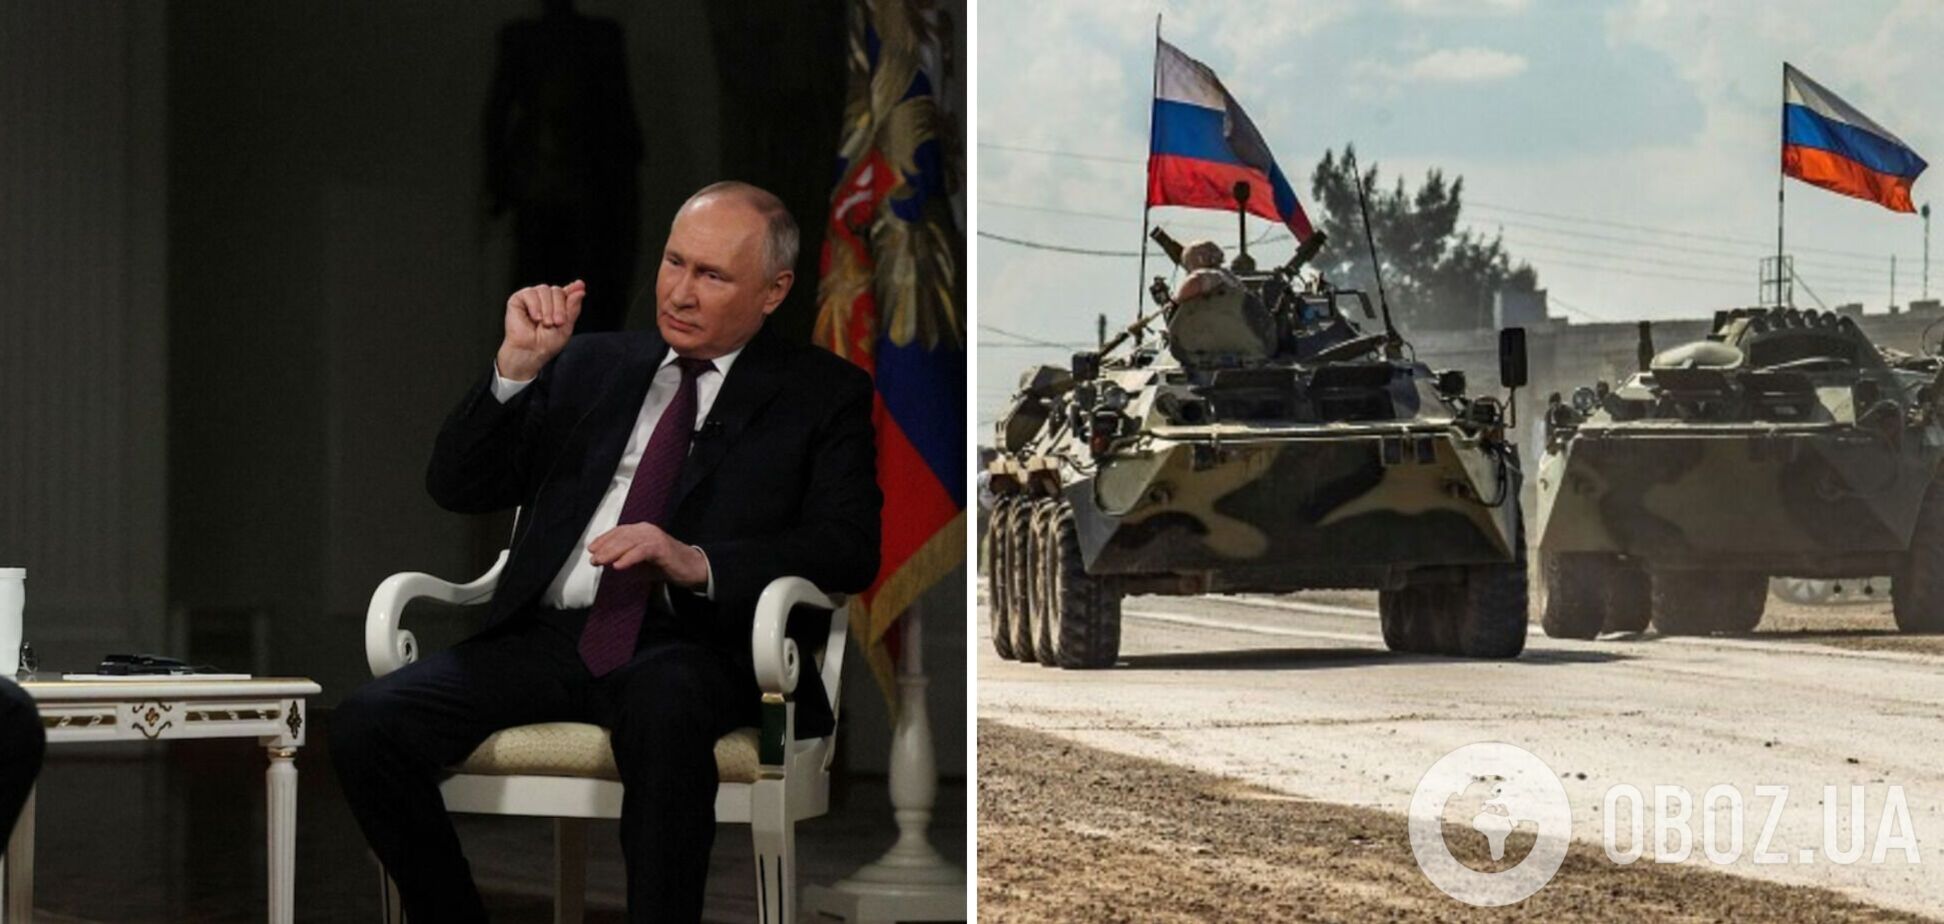 Карлсон в интервью раскрыл подлинные мотивы войны Путина: захватить Украину – Washington Post